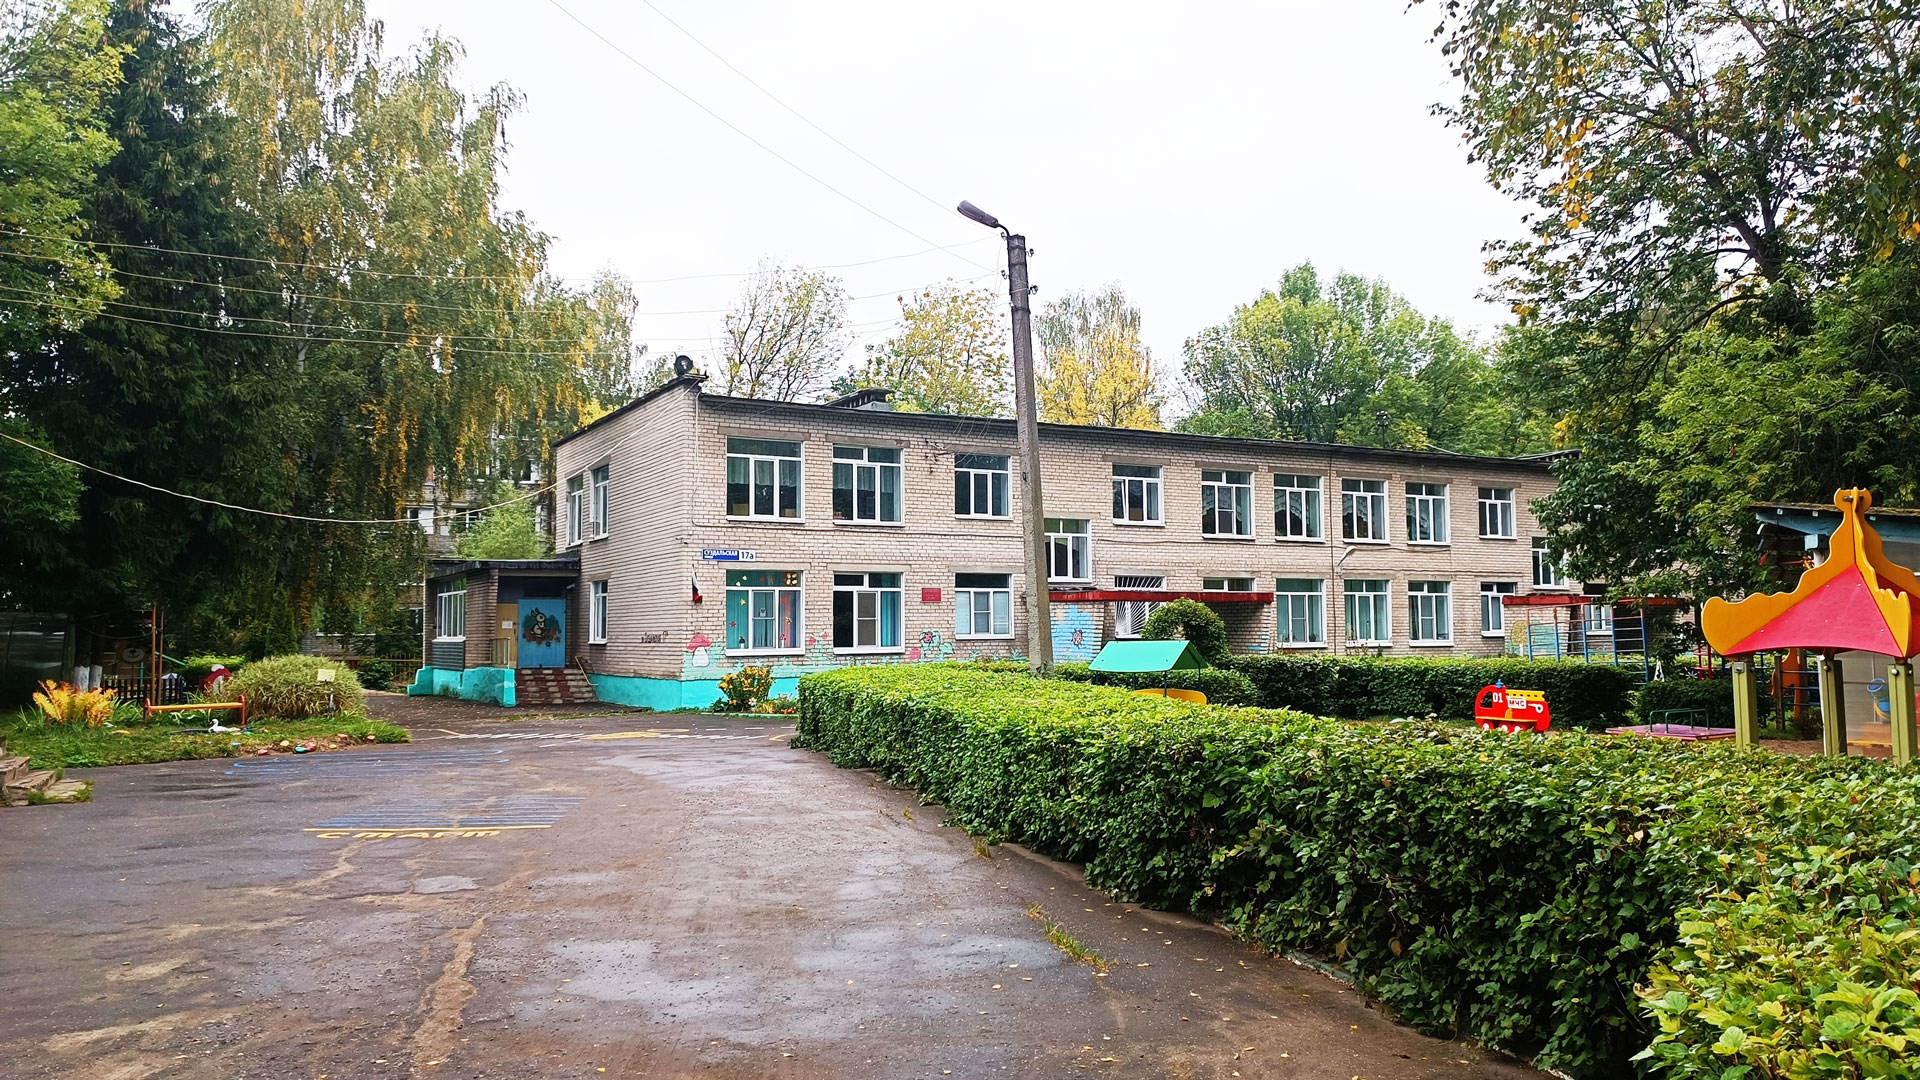 Детский сад 28 Ярославль: общий вид здания.